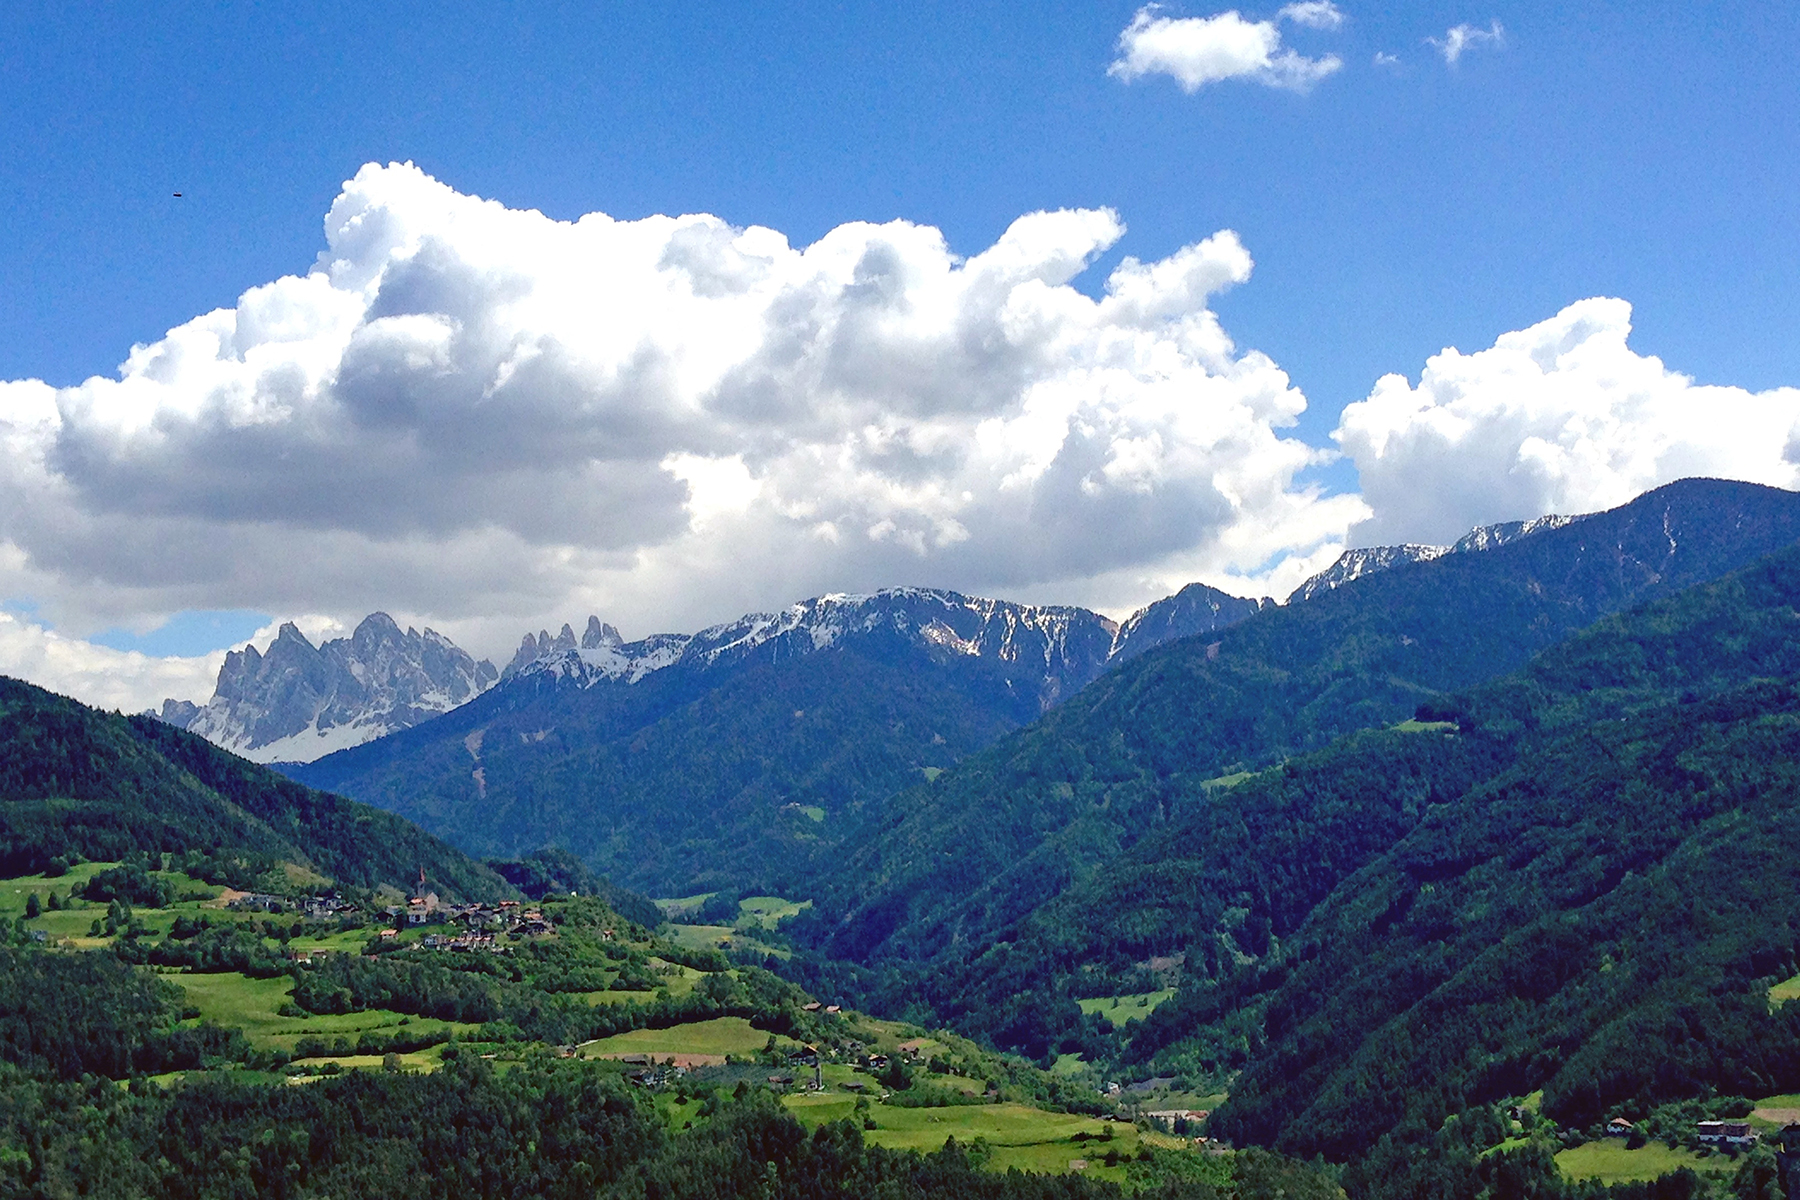 Törggelen in Südtirol: Kastanien, Kultur und Kulinarik - 5 Tipps für den Keschtnweg